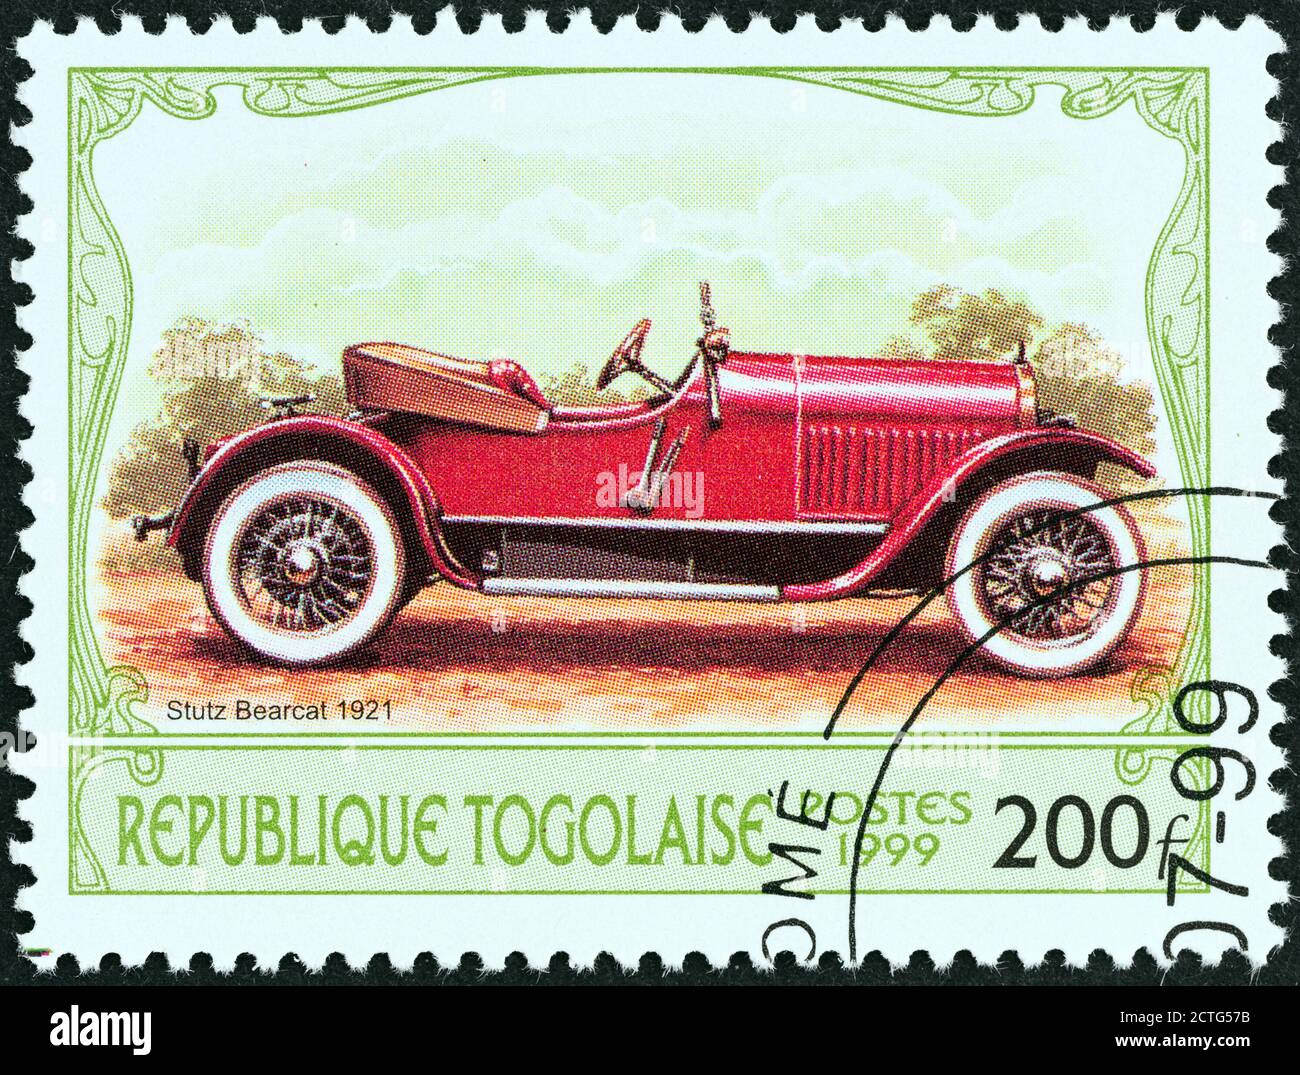 TOGO - UM 1999: Eine in Togo gedruckte Briefmarke aus der Ausgabe 'Antique Automobiles' zeigt einen Stutz Bearcat, 1921, um 1999. Stockfoto